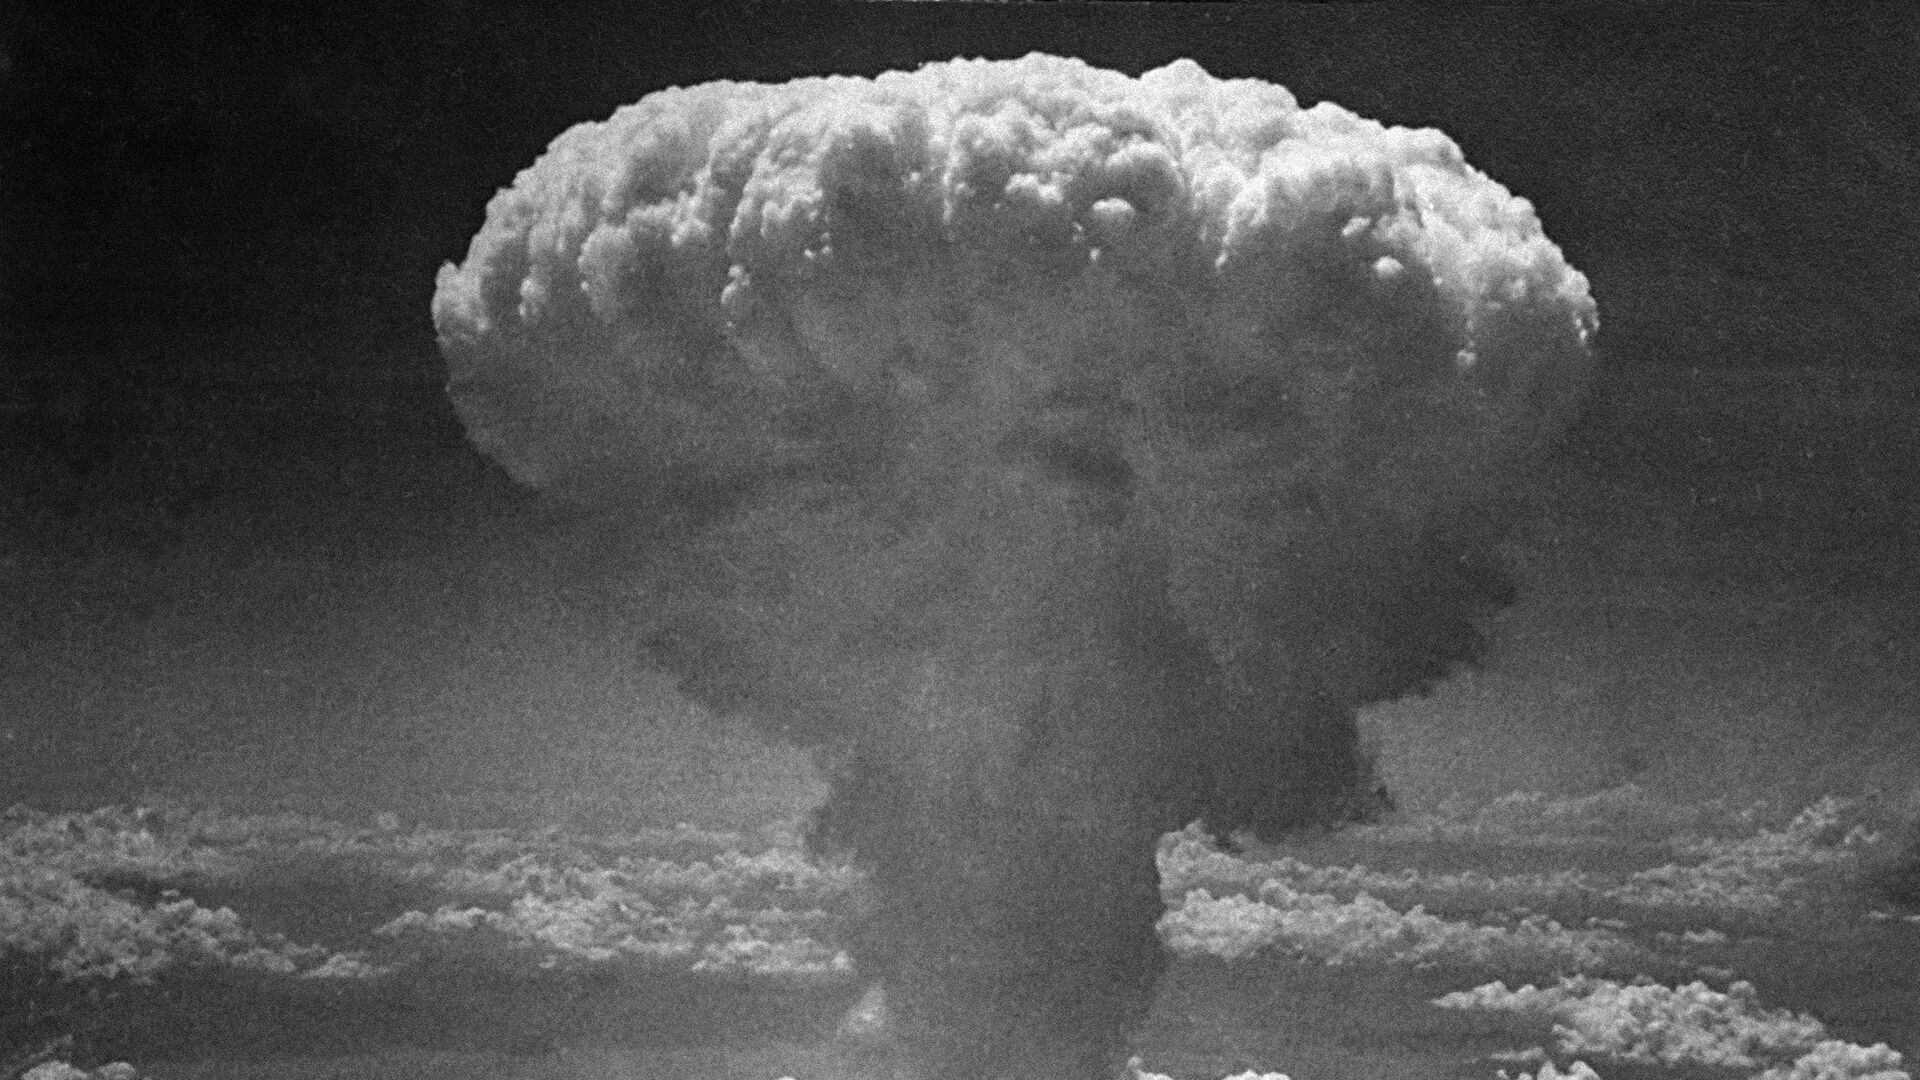 Облако от атомного взрыва над Нагасаки, Япония. 9 августа 1945 - РИА Новости, 1920, 27.08.2020